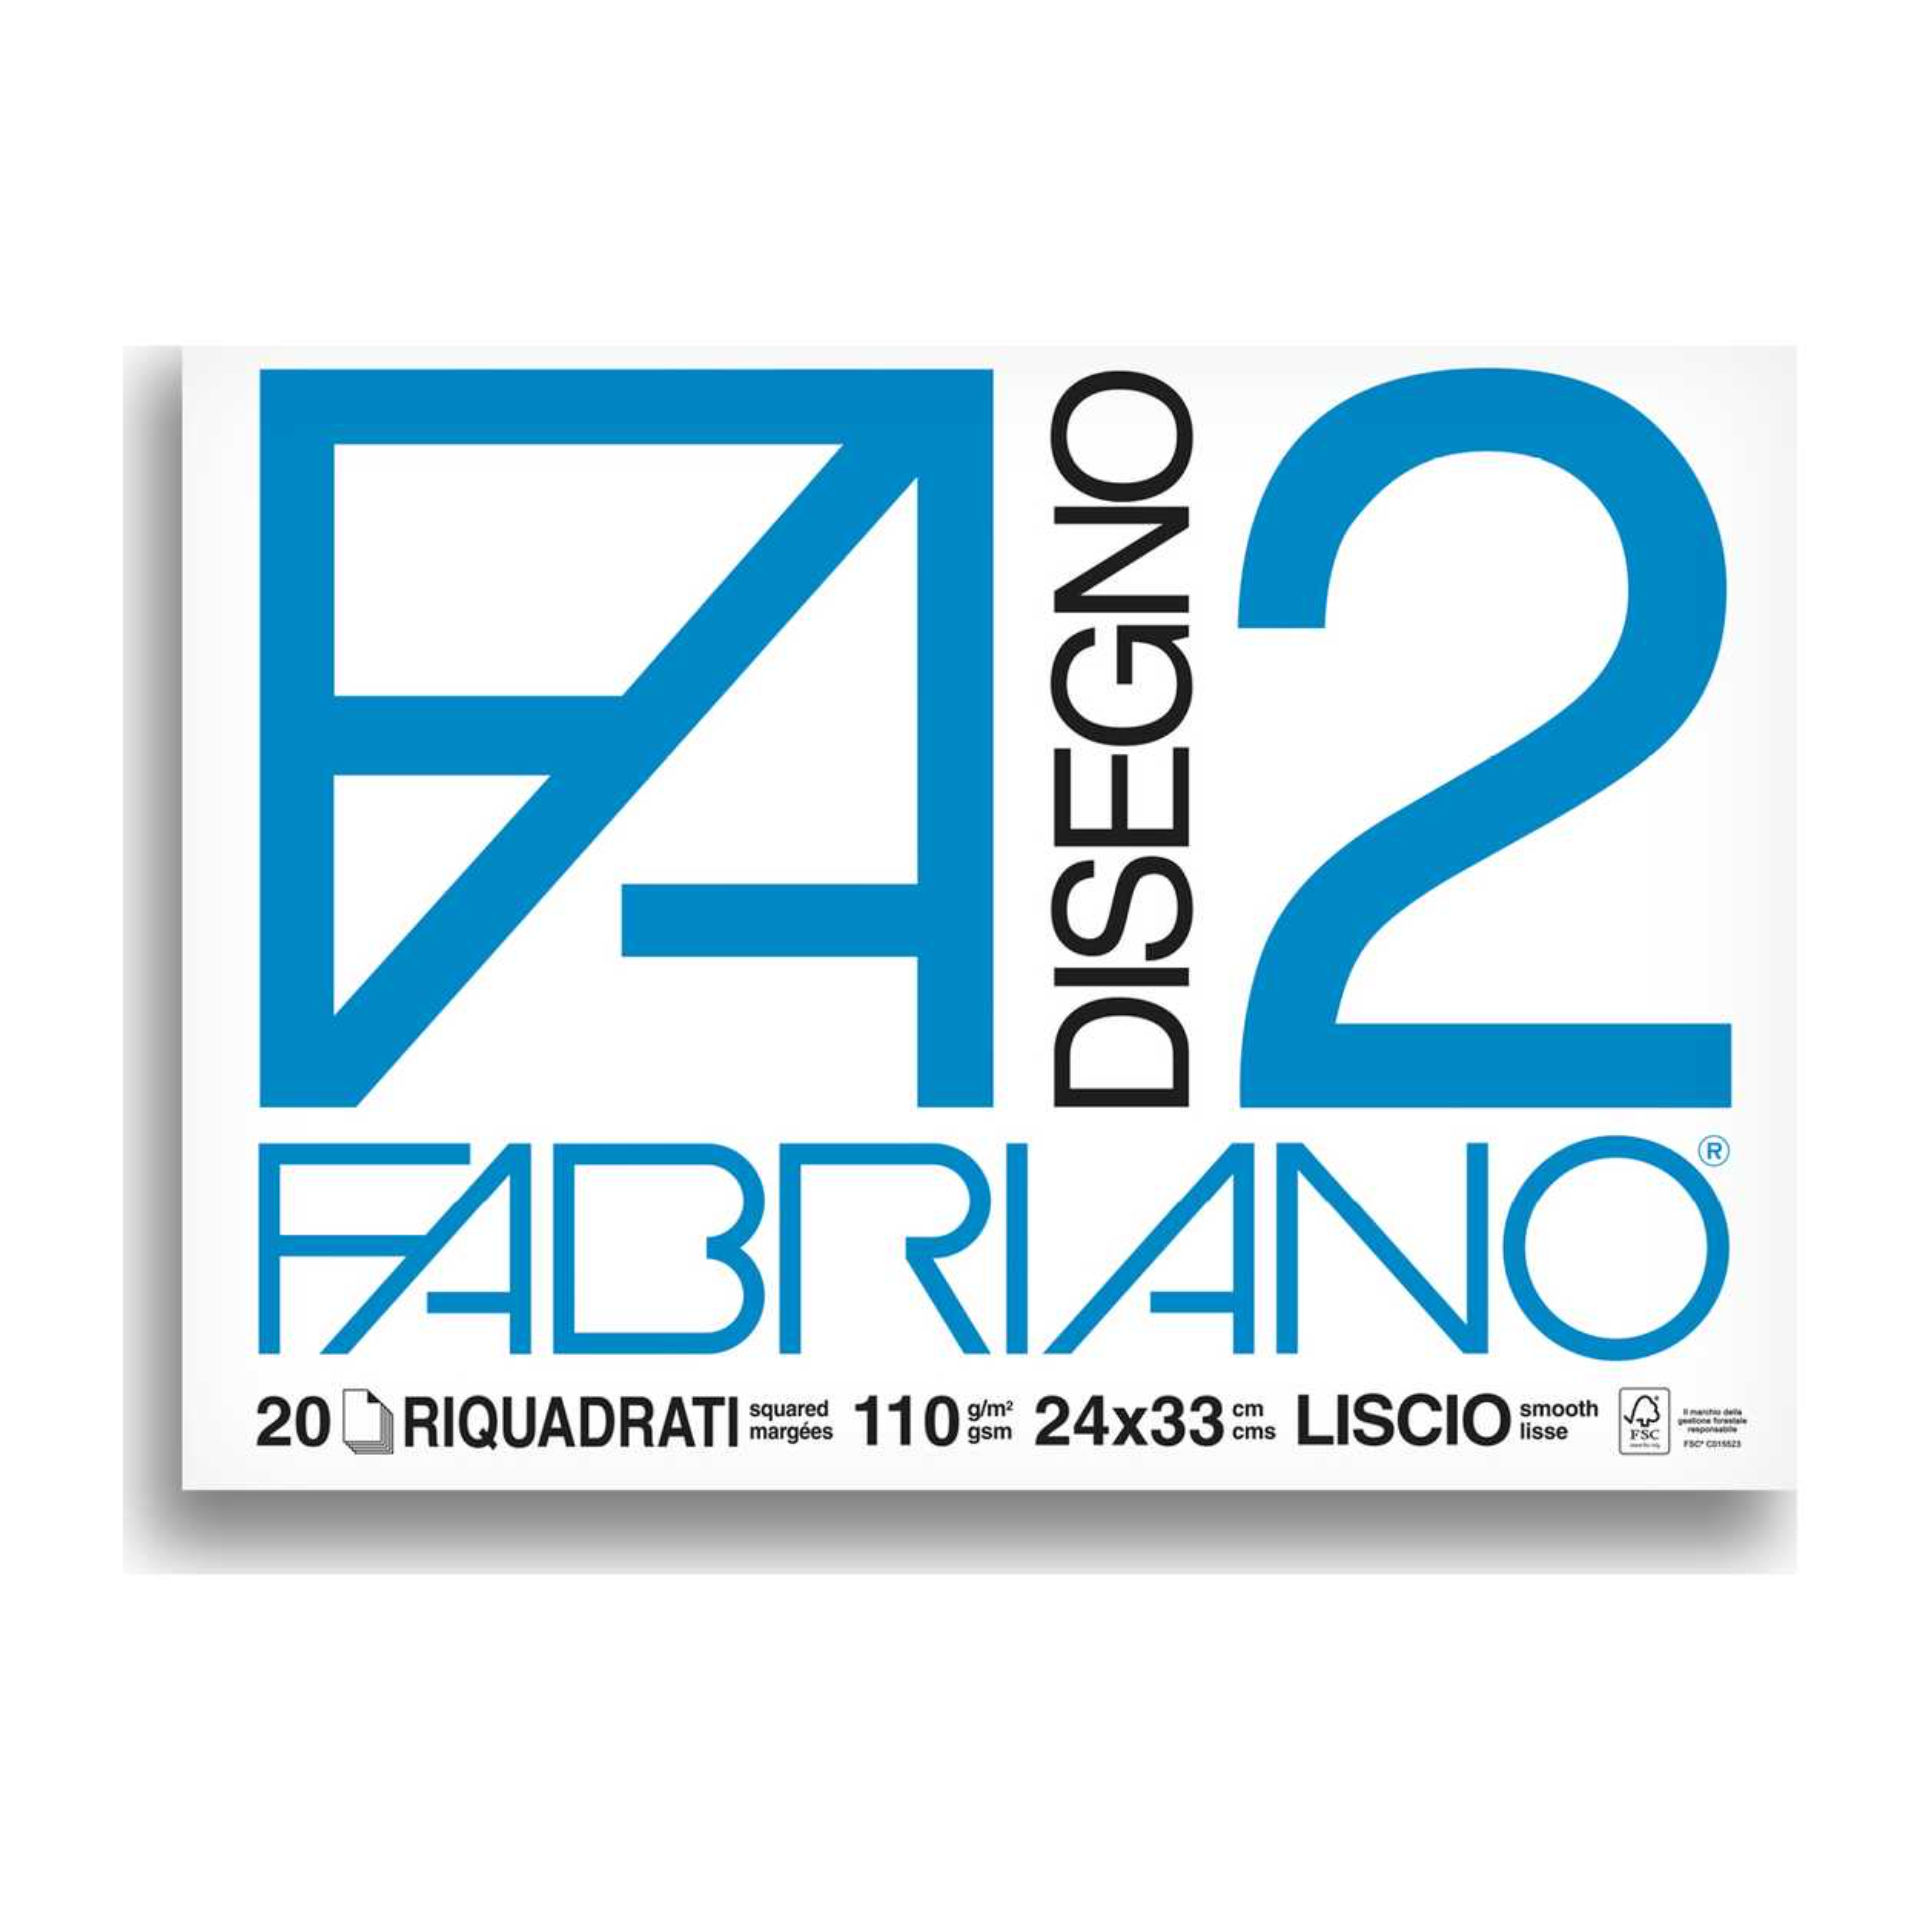 BLOCCO FABRIANO 1516 - F2 24X33 FG.20 SQUADRATOFabriano